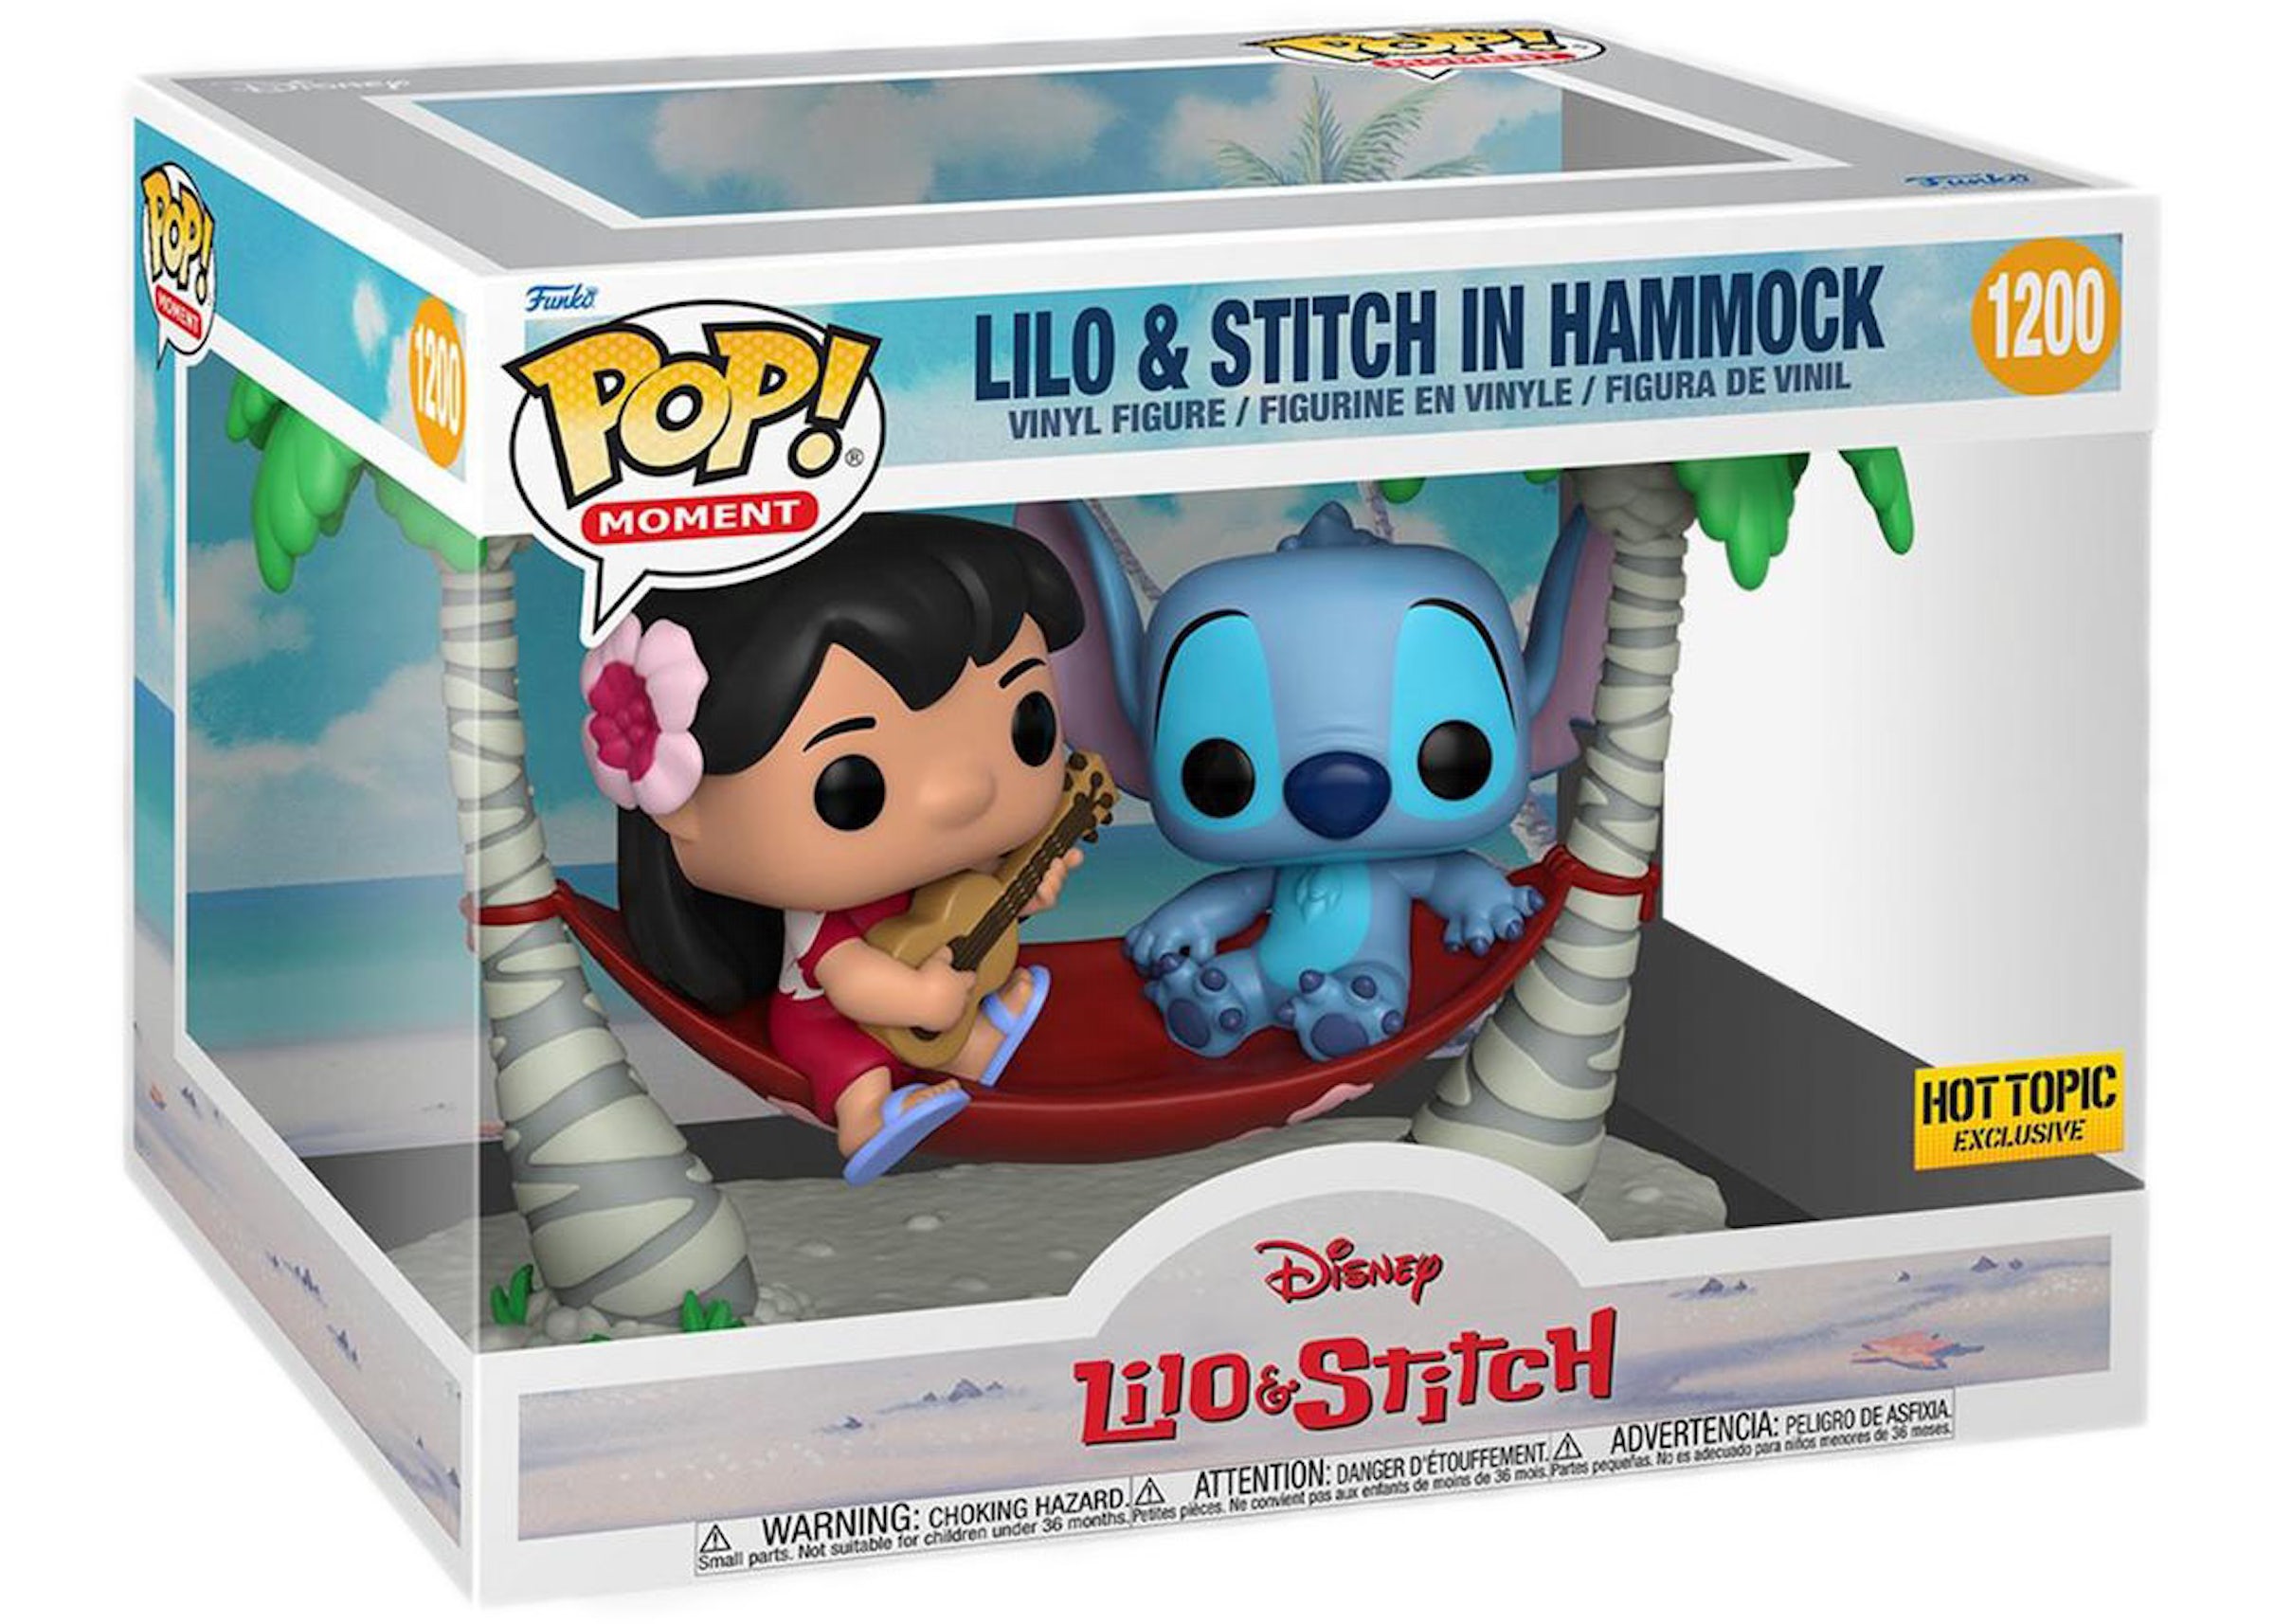 Funko Pop! Moment Disney Lilo & Stitch (Lilo & Stitch in Hammock